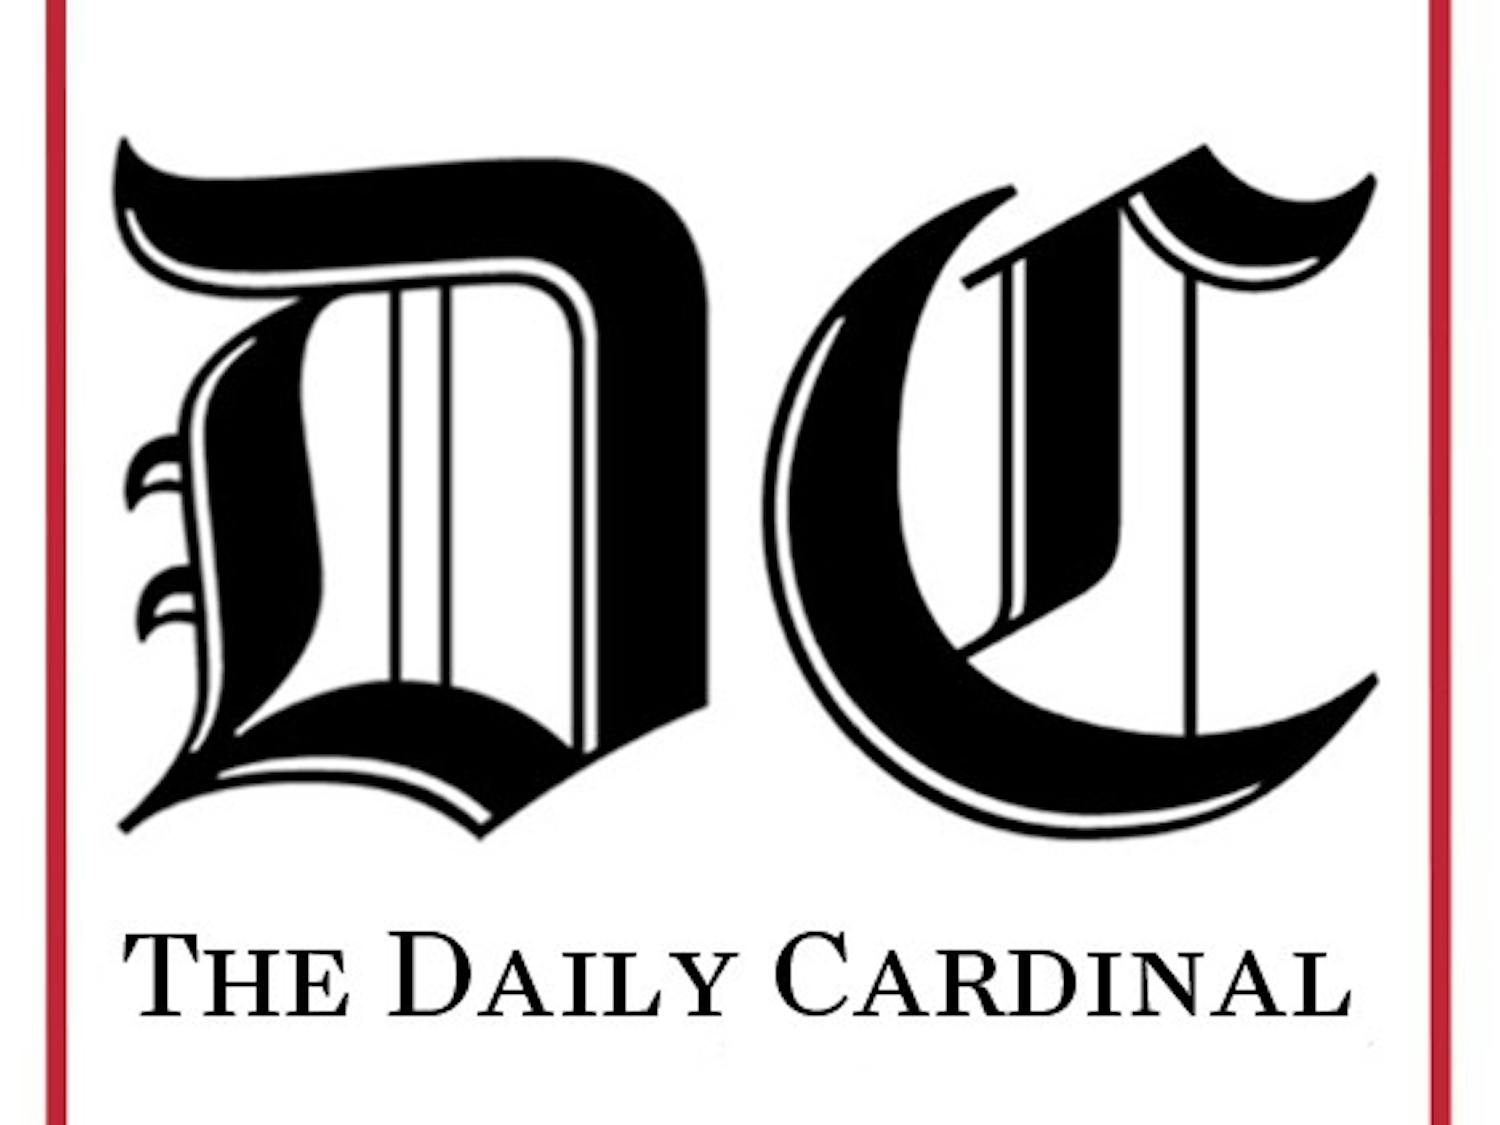 Daily Cardinal logo